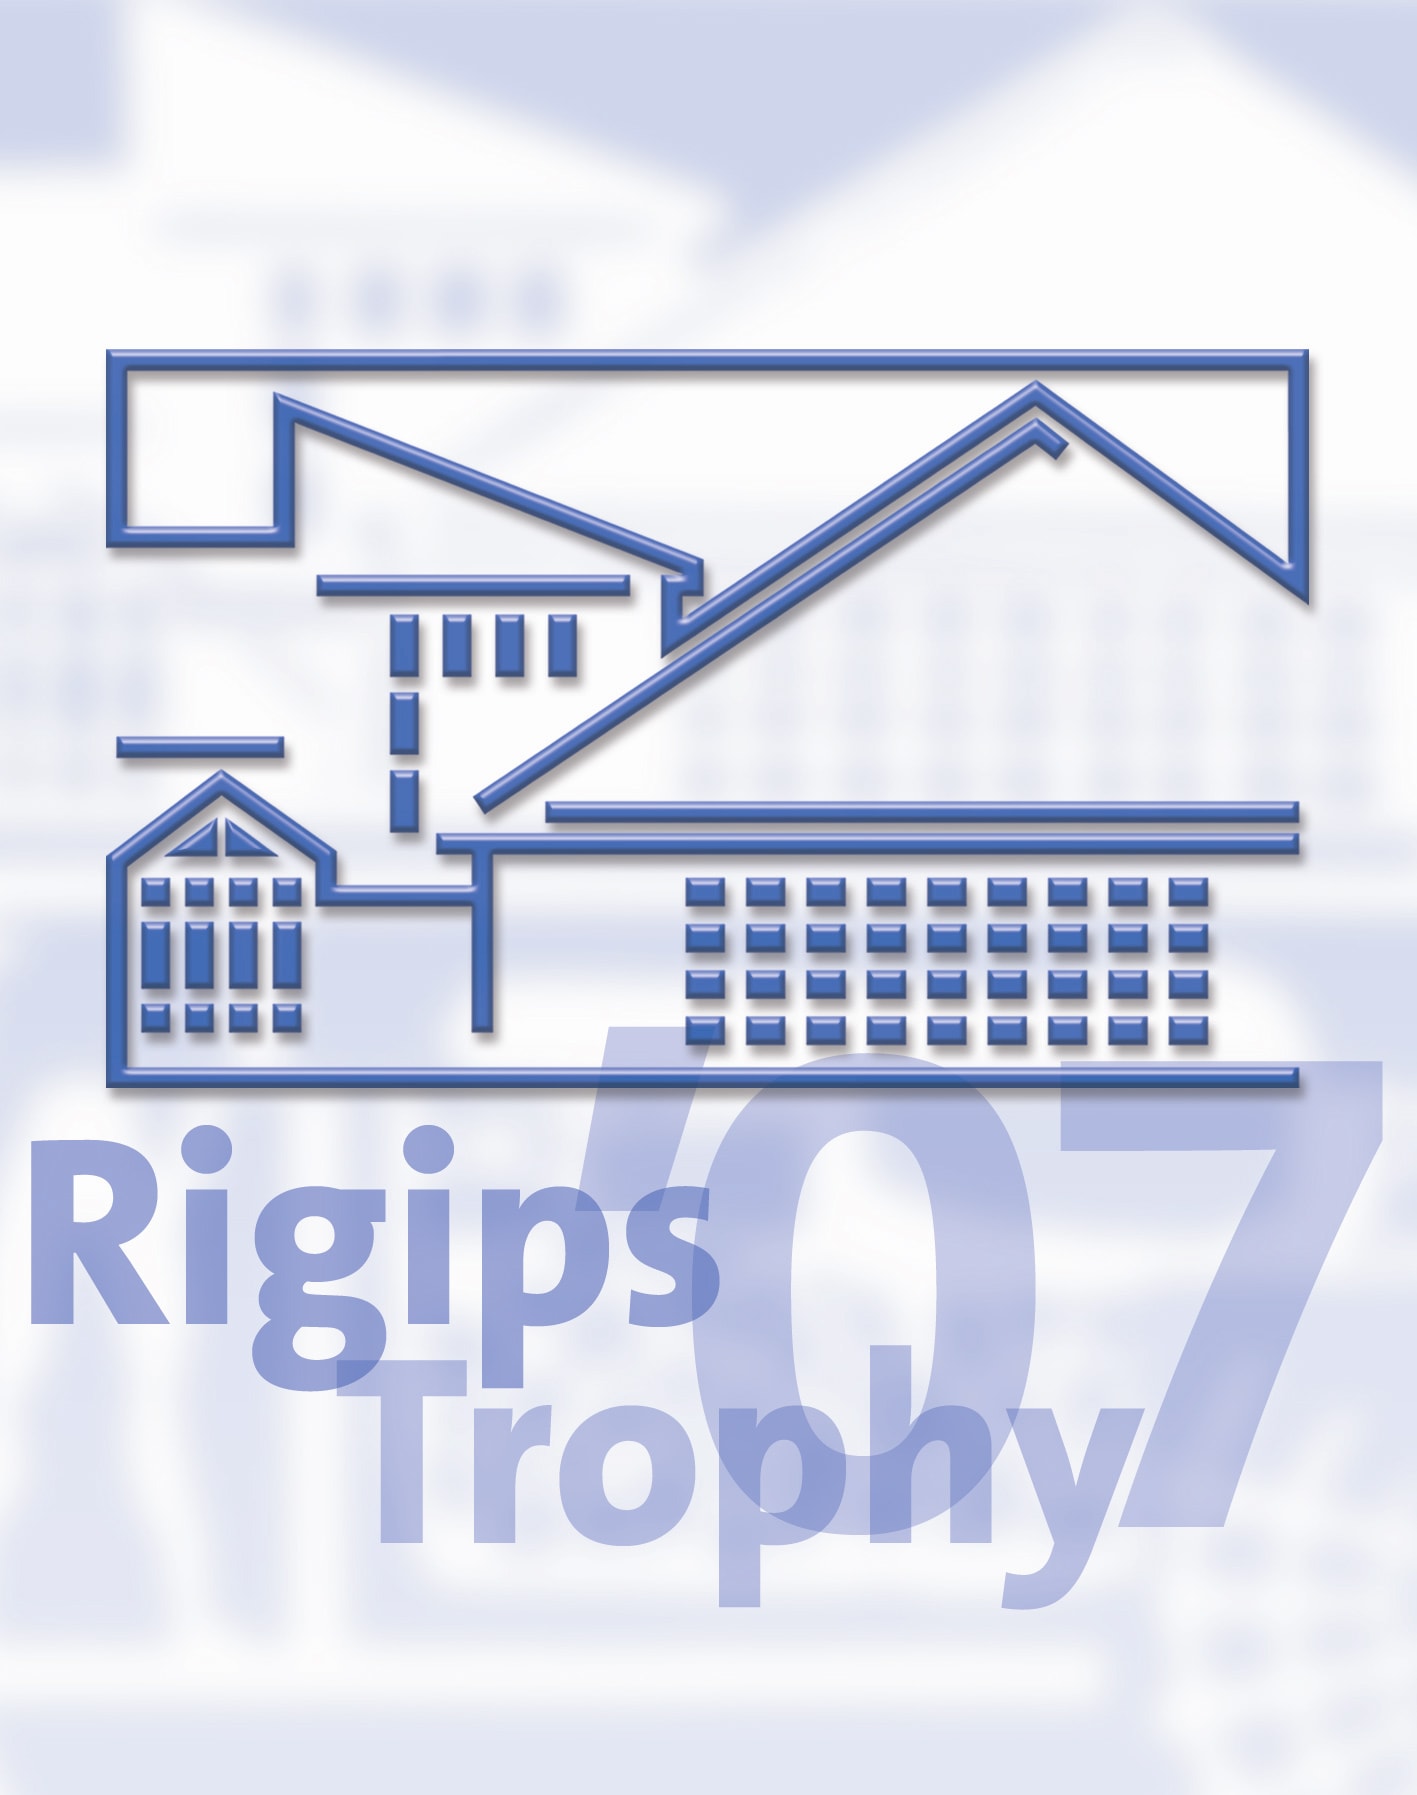 Teilnahme an der 7. Rigips Trophy 2007 / 2008